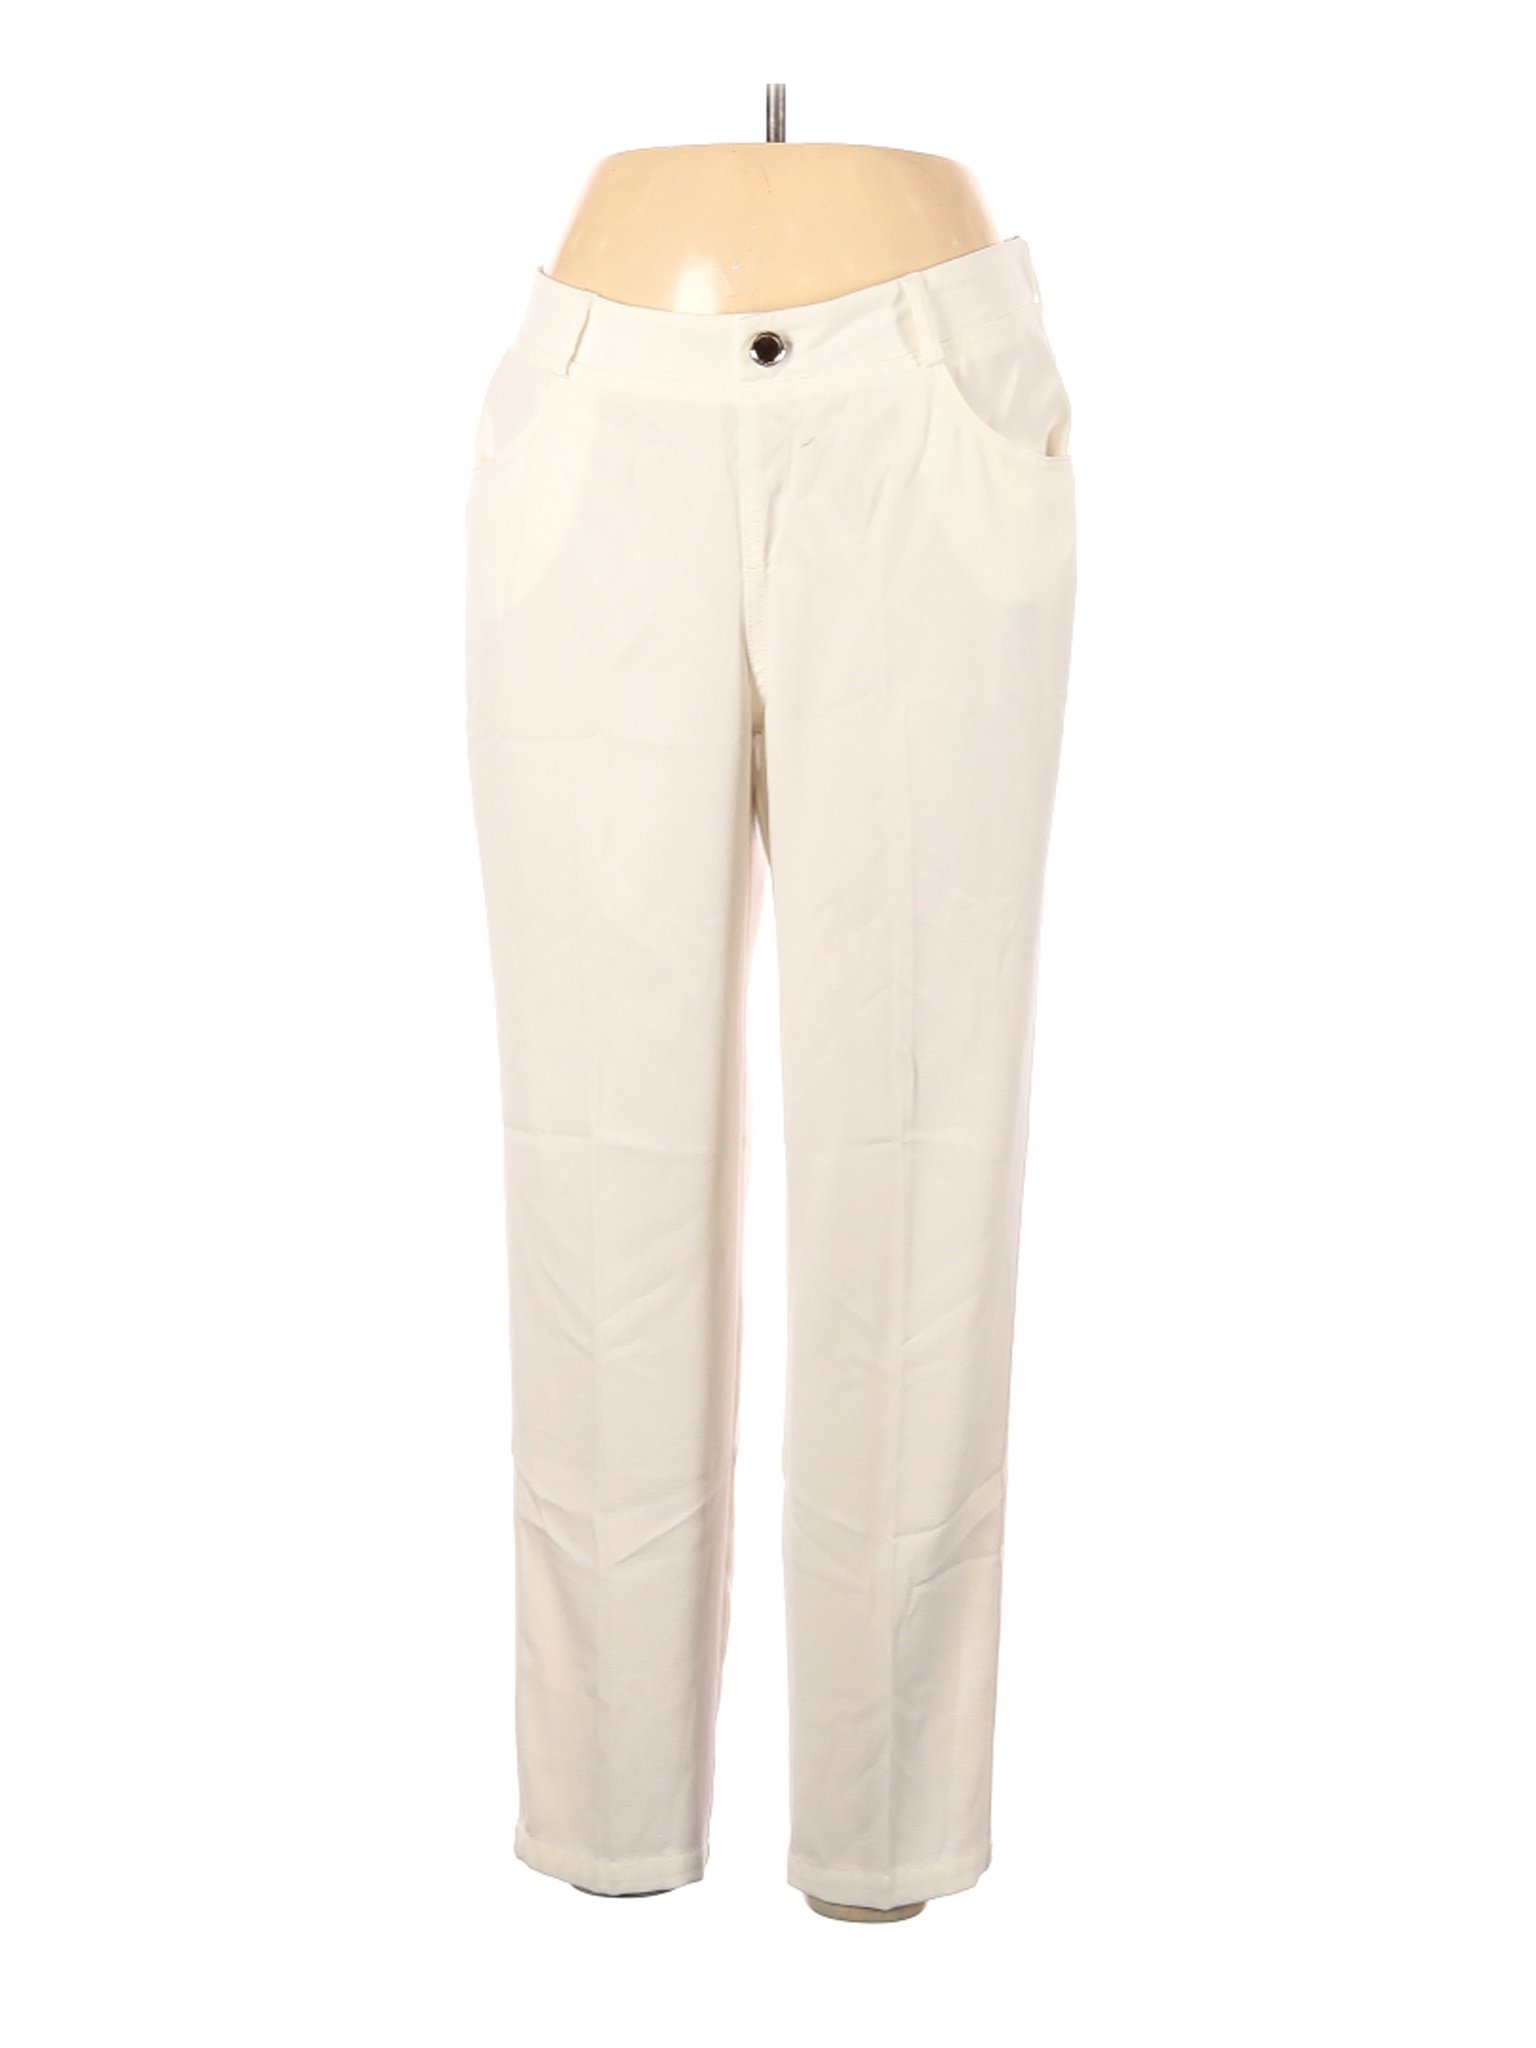 IMAN Women Ivory Dress Pants L | eBay